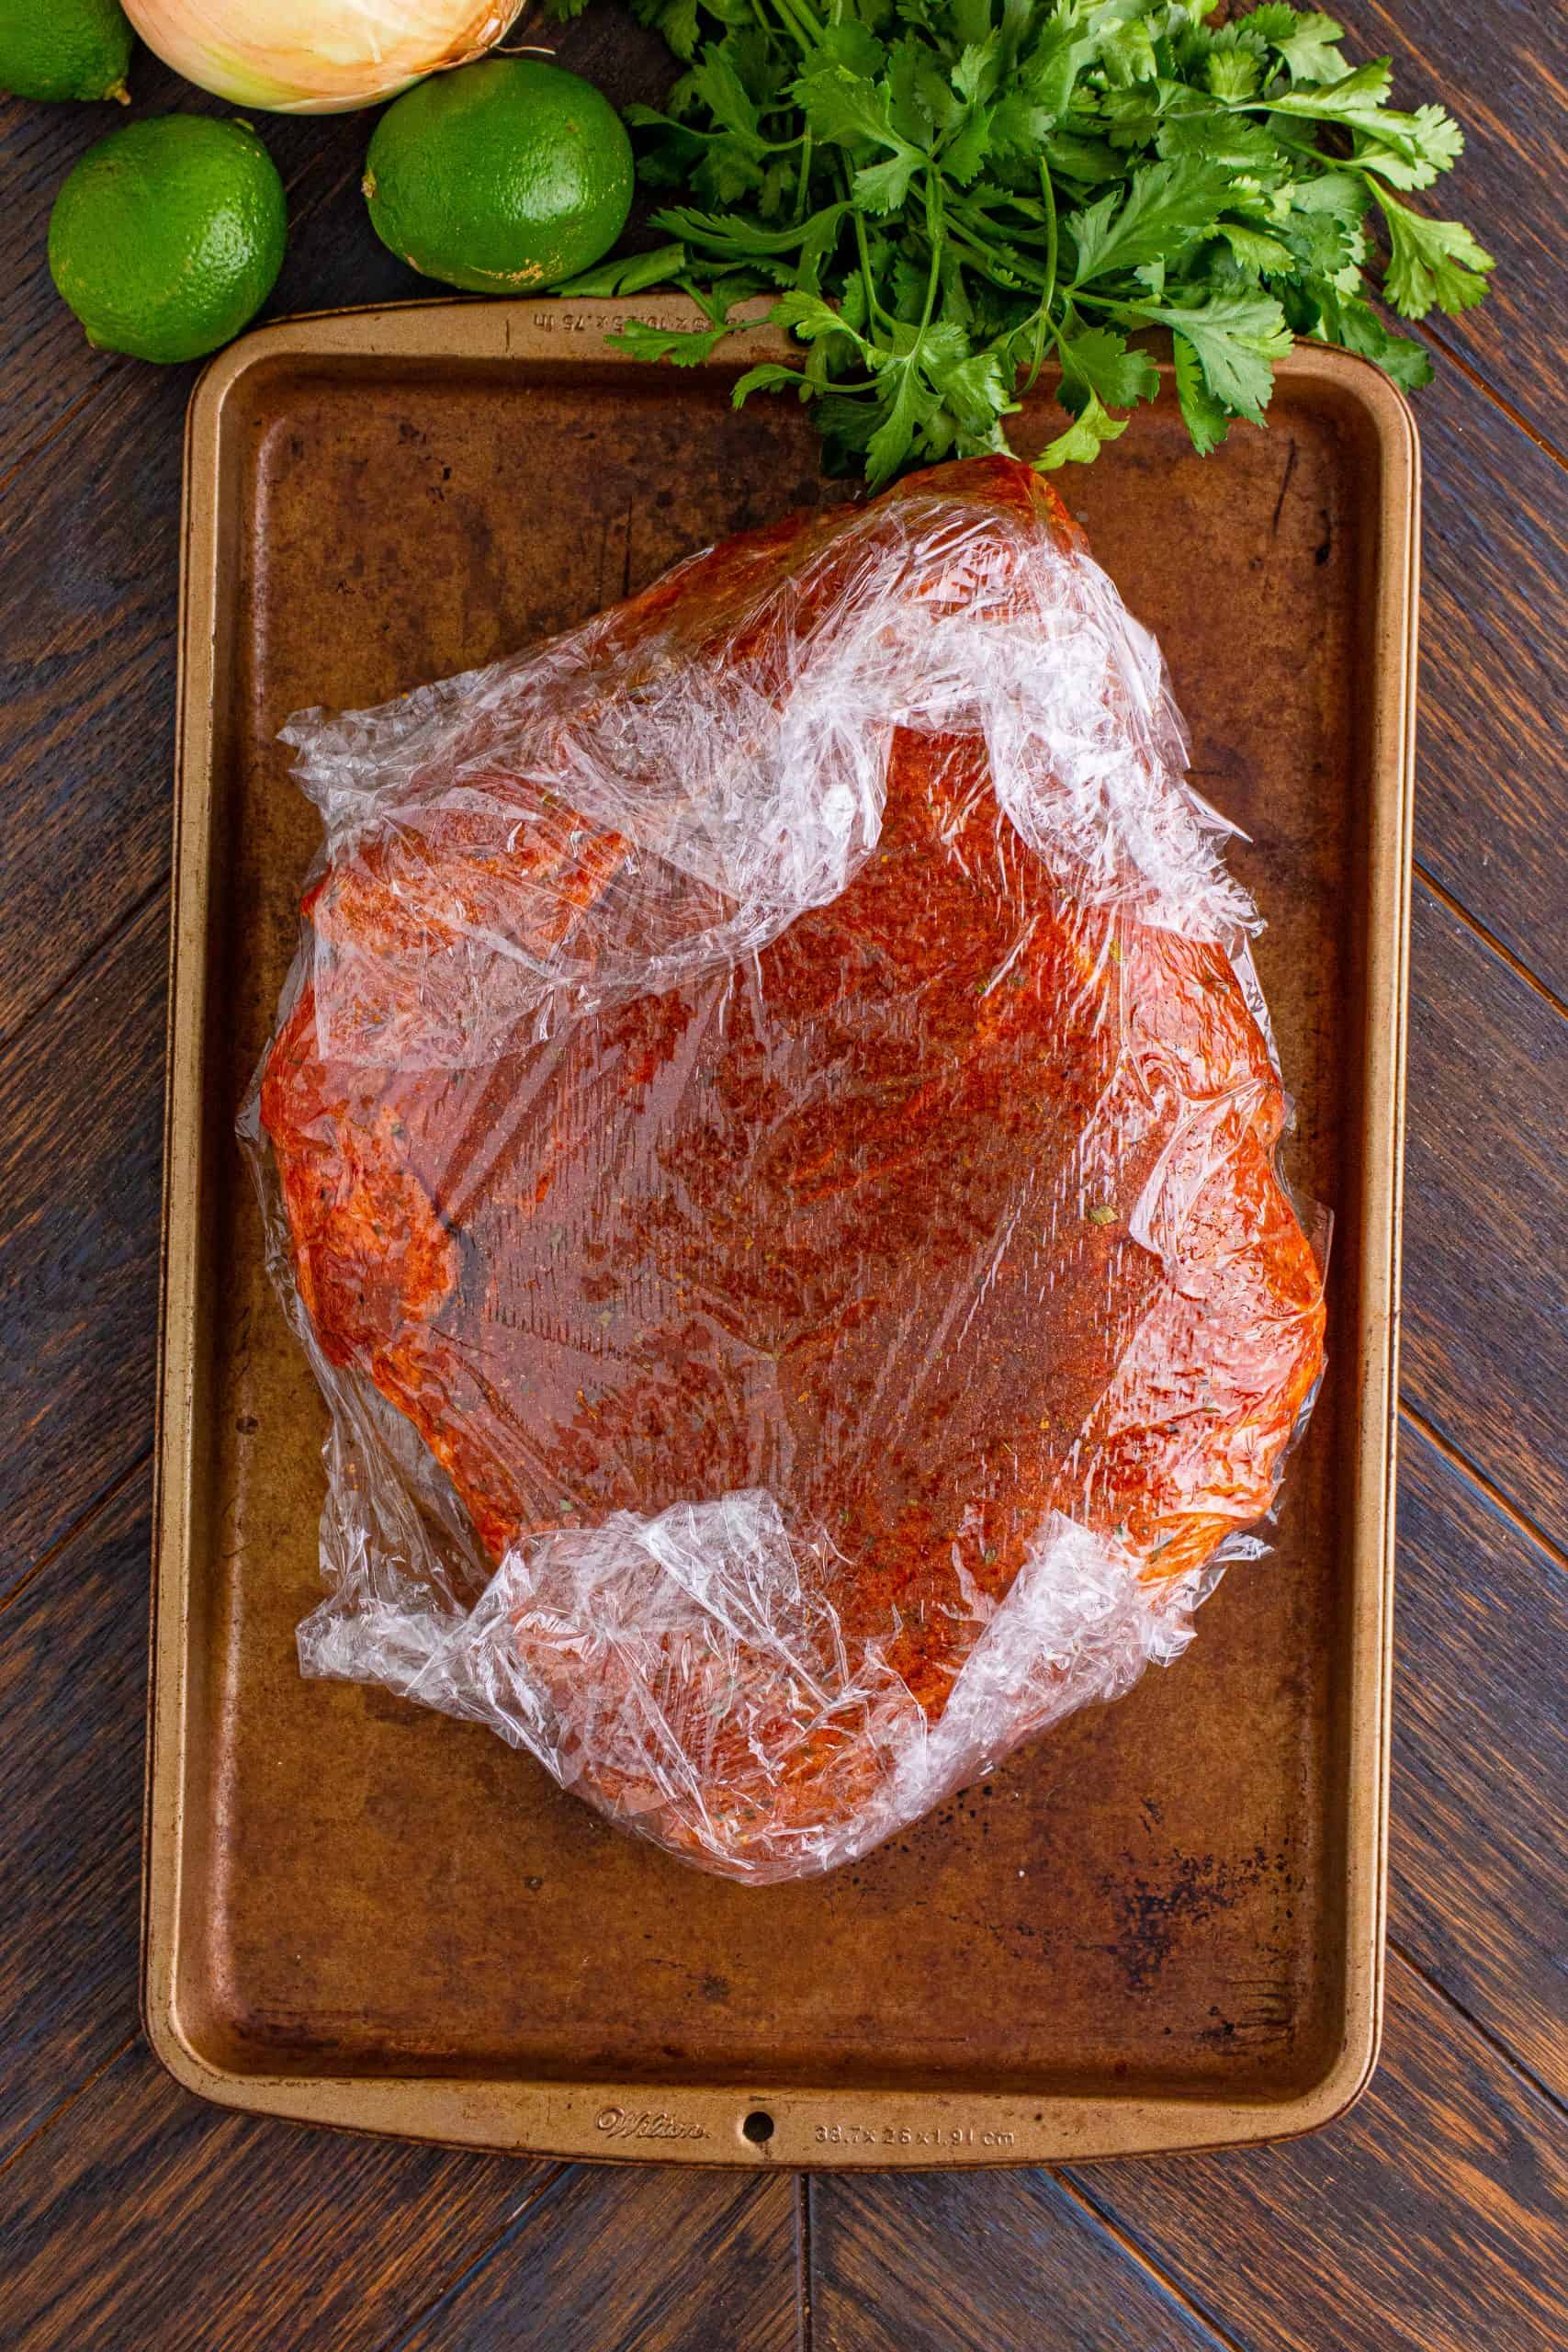 seasoned pork roast wrapped in plastic wrap.